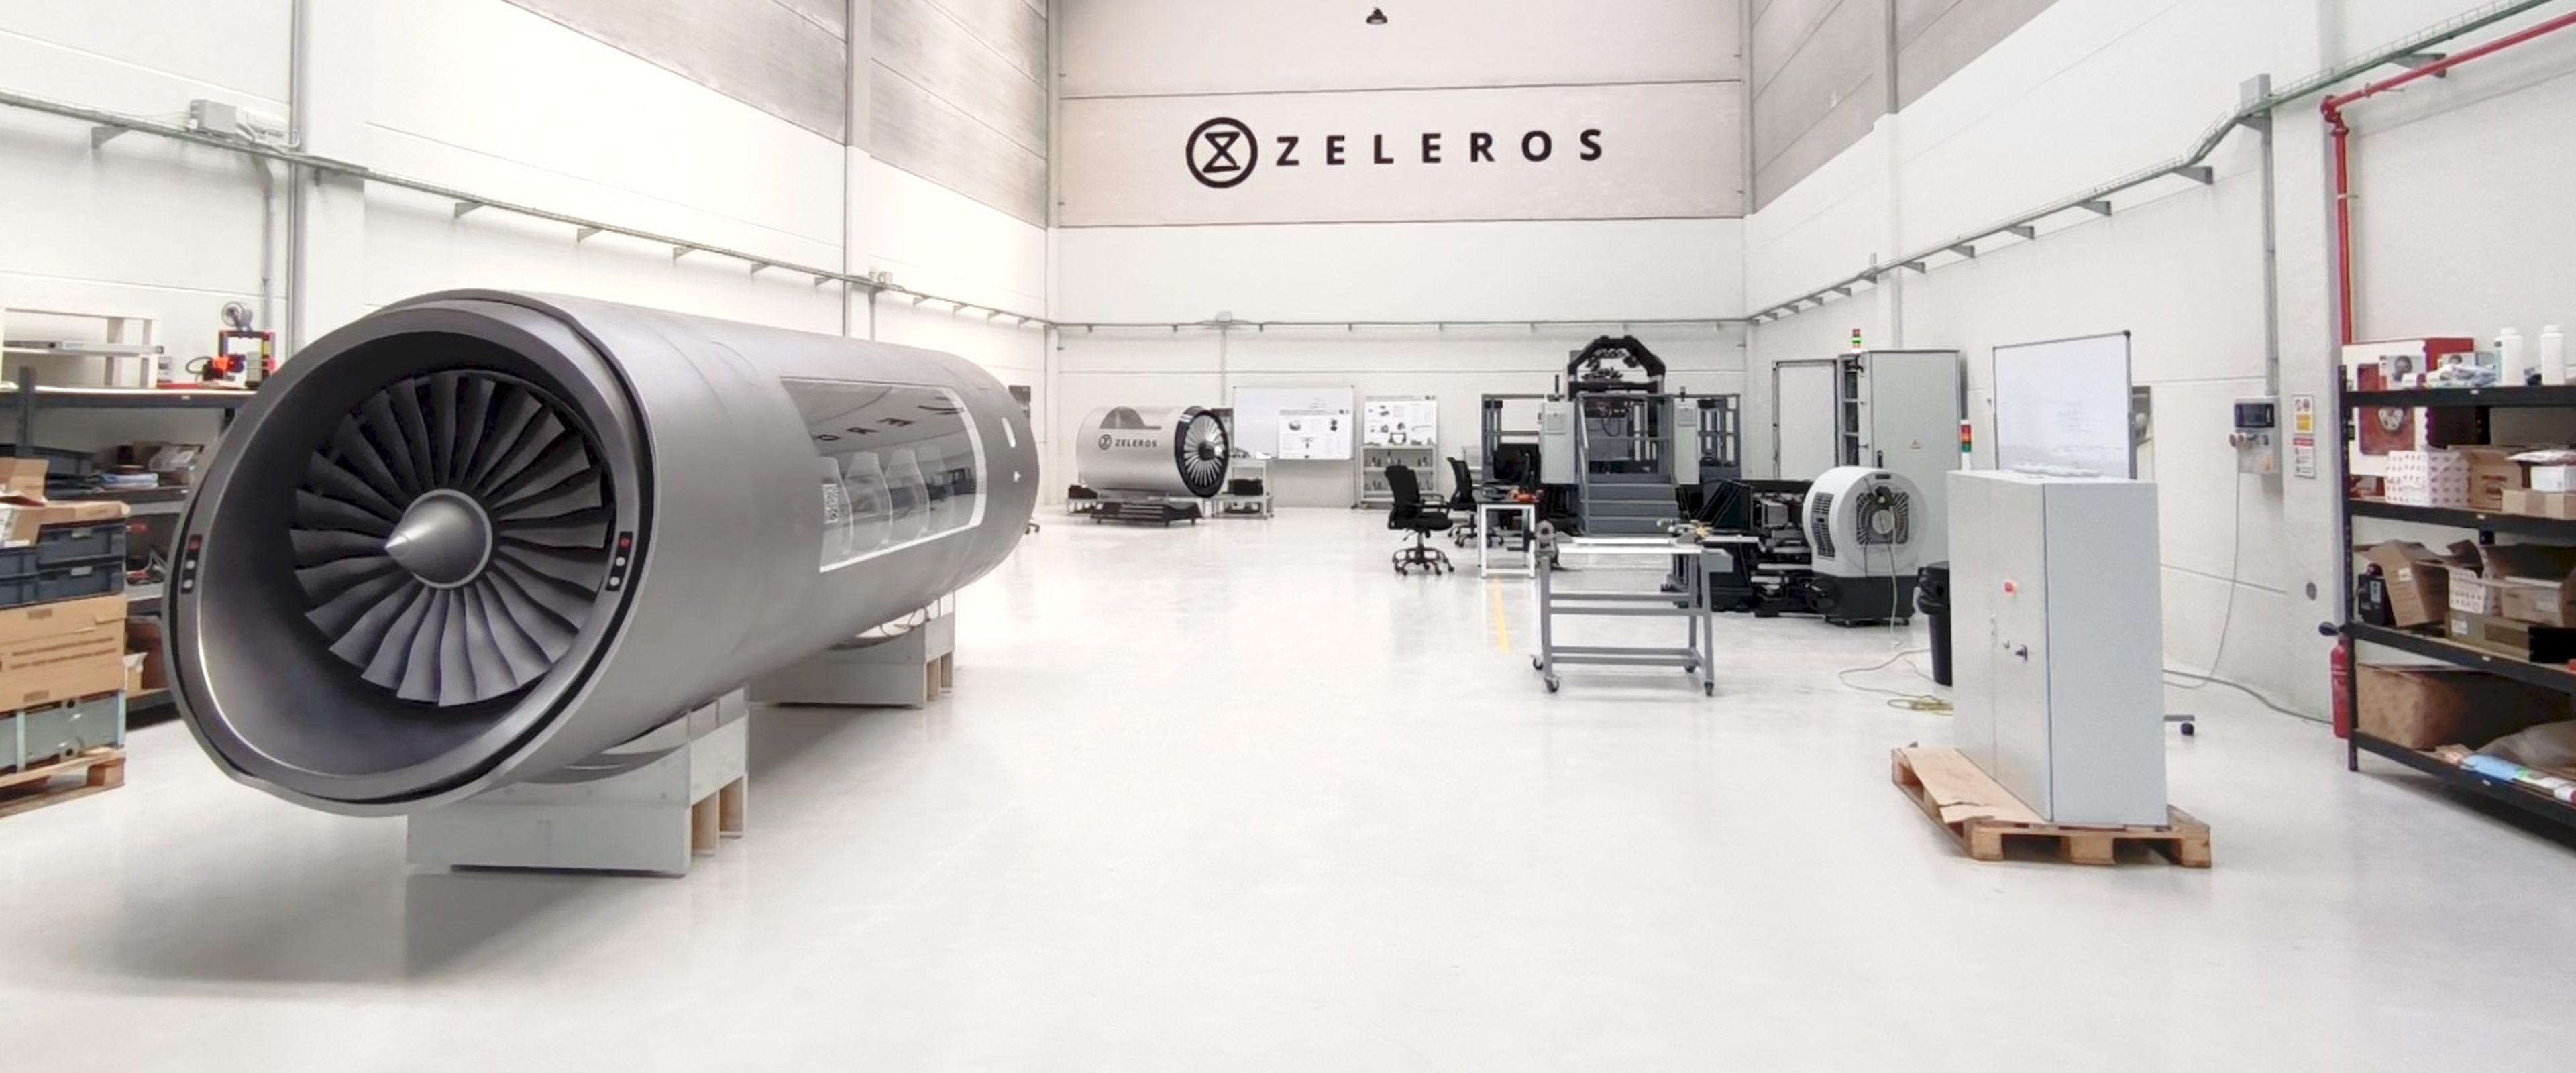 El lab de Zeleros donde se encuentran el prototipo de la cápsula y el resto de sistema de propulsión.